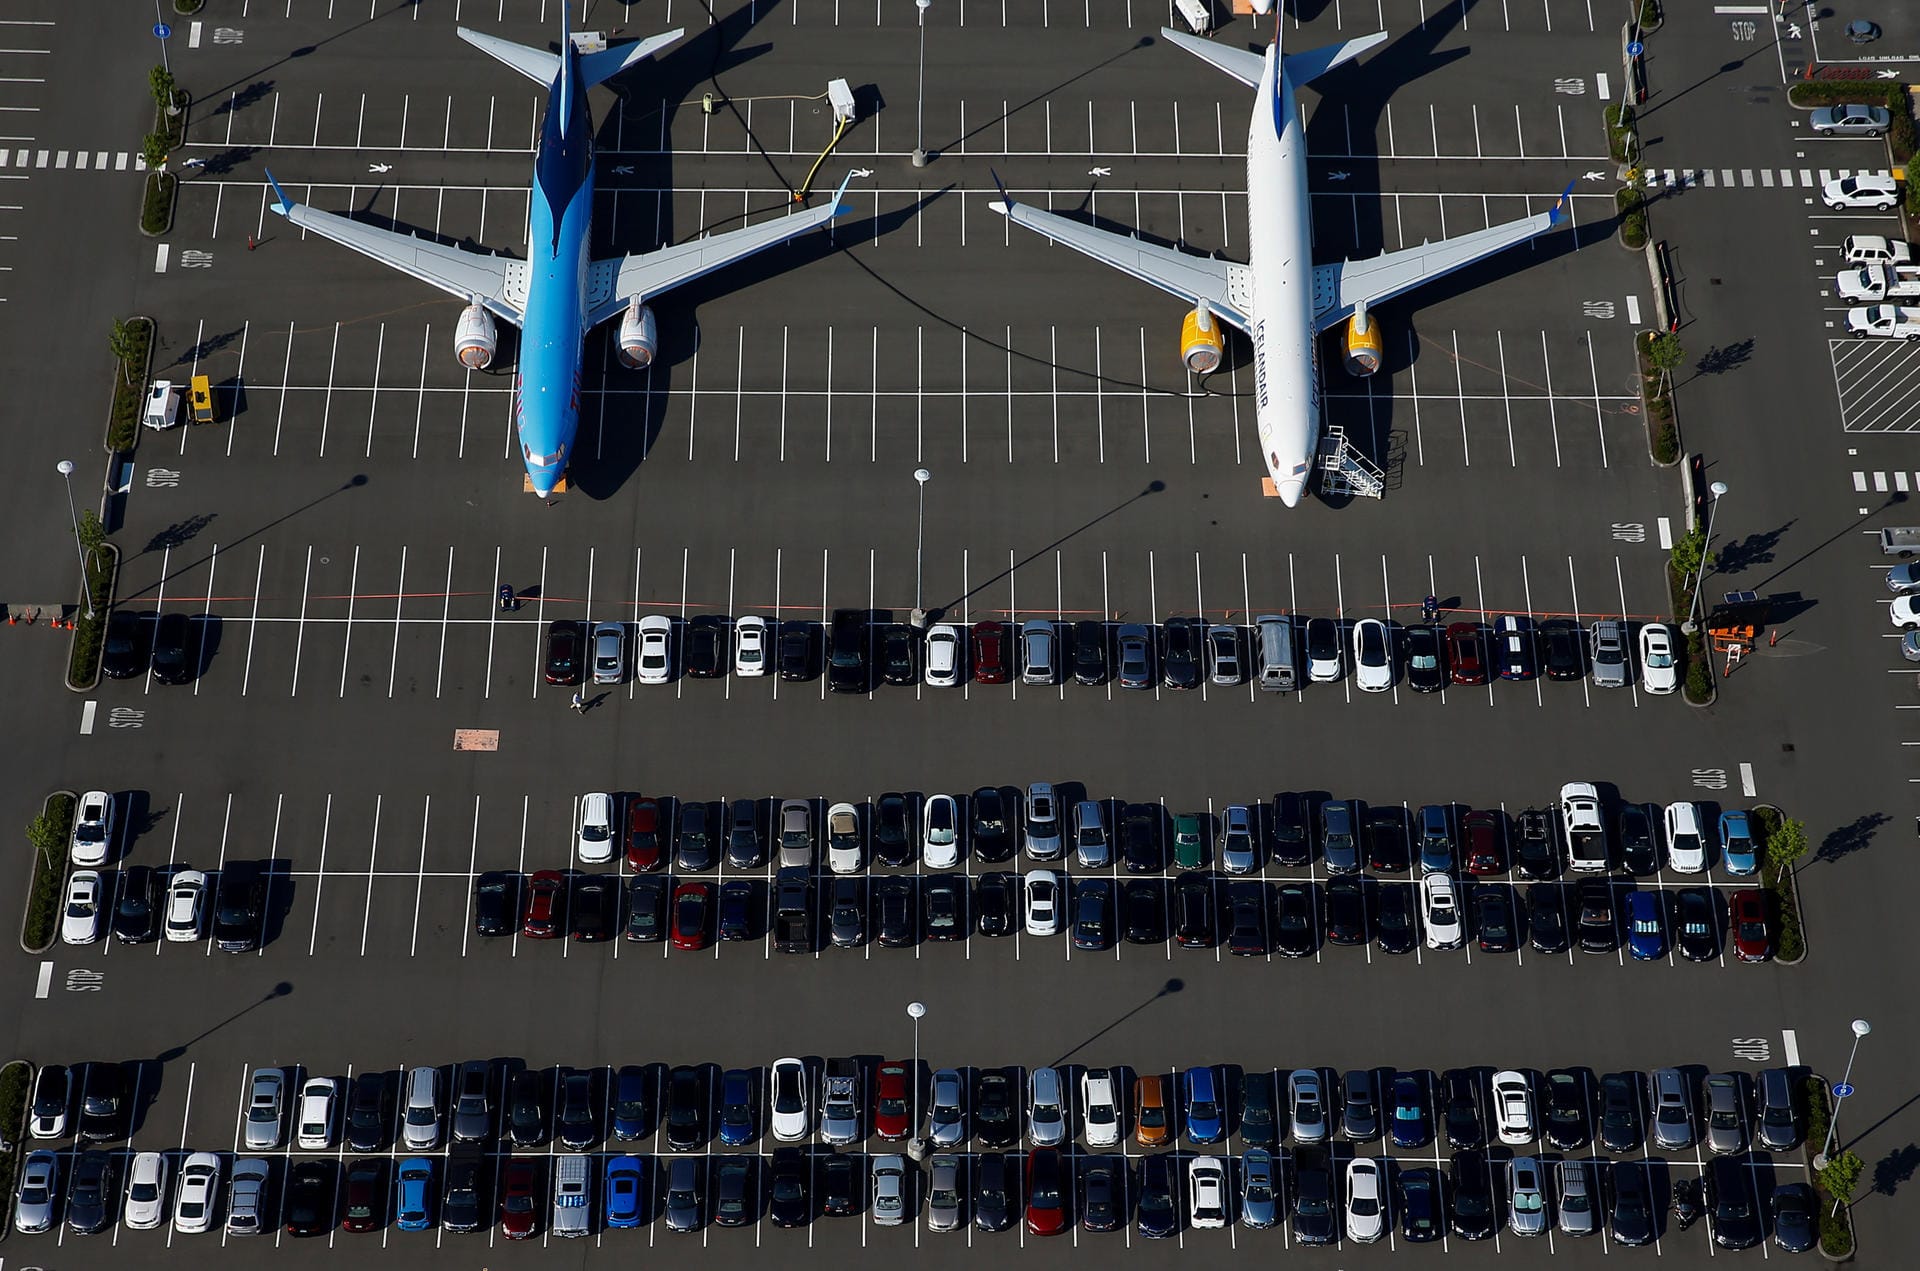 Selbst die Mitarbeiterparkplätze werden für die Aufbewahrung der Flugzeuge verwendet.